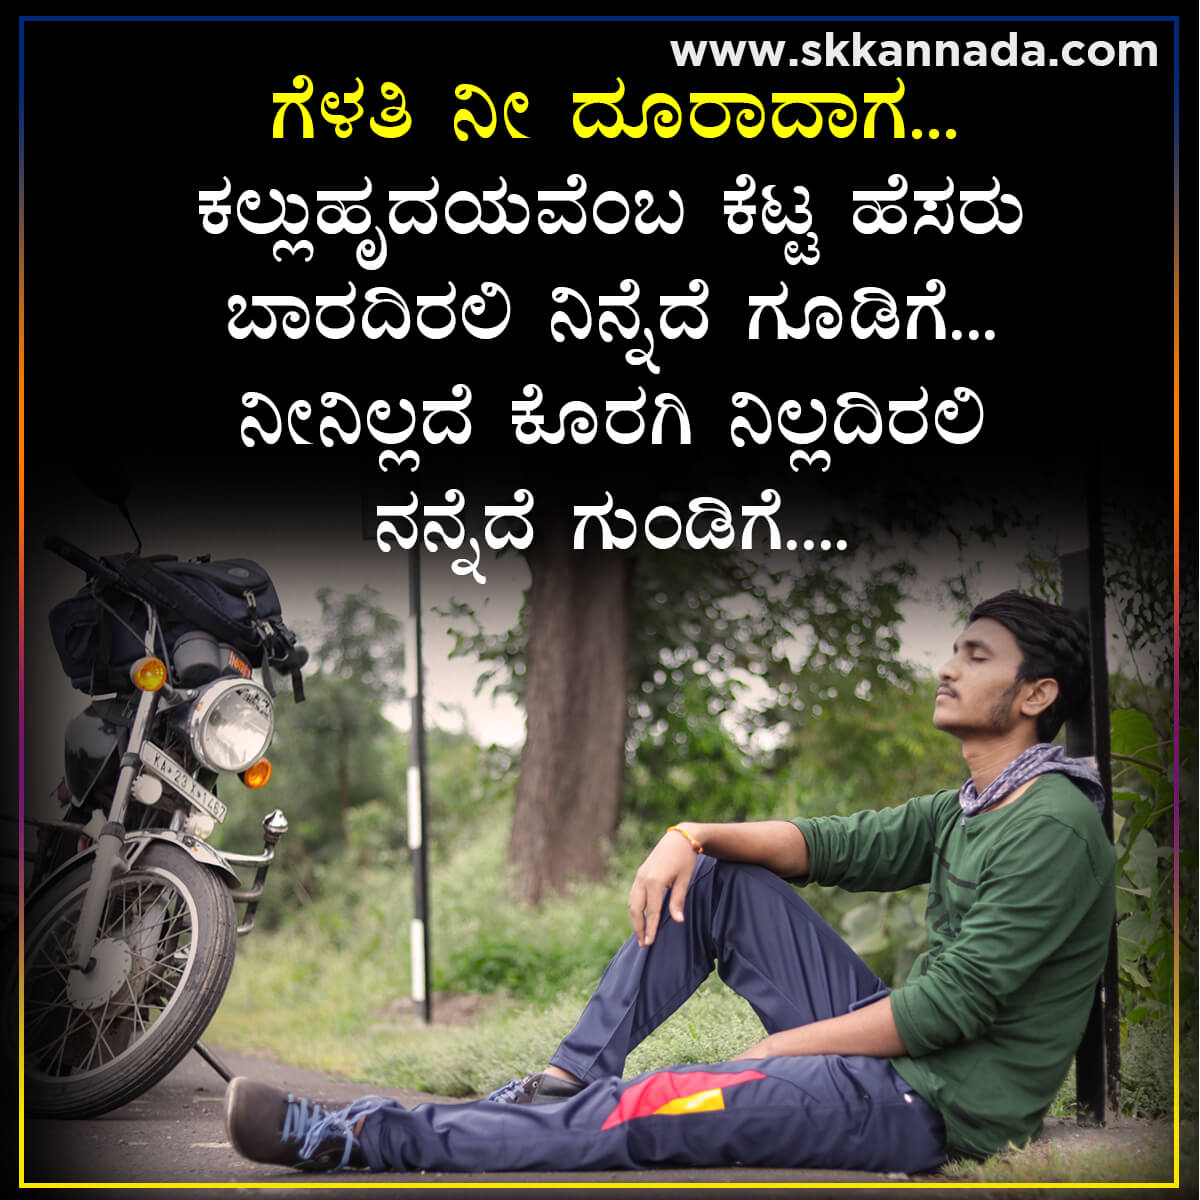 ಗೆಳತಿ ನೀ ದೂರಾದಾಗ - Kannada Sad Love Kavanagalu ...